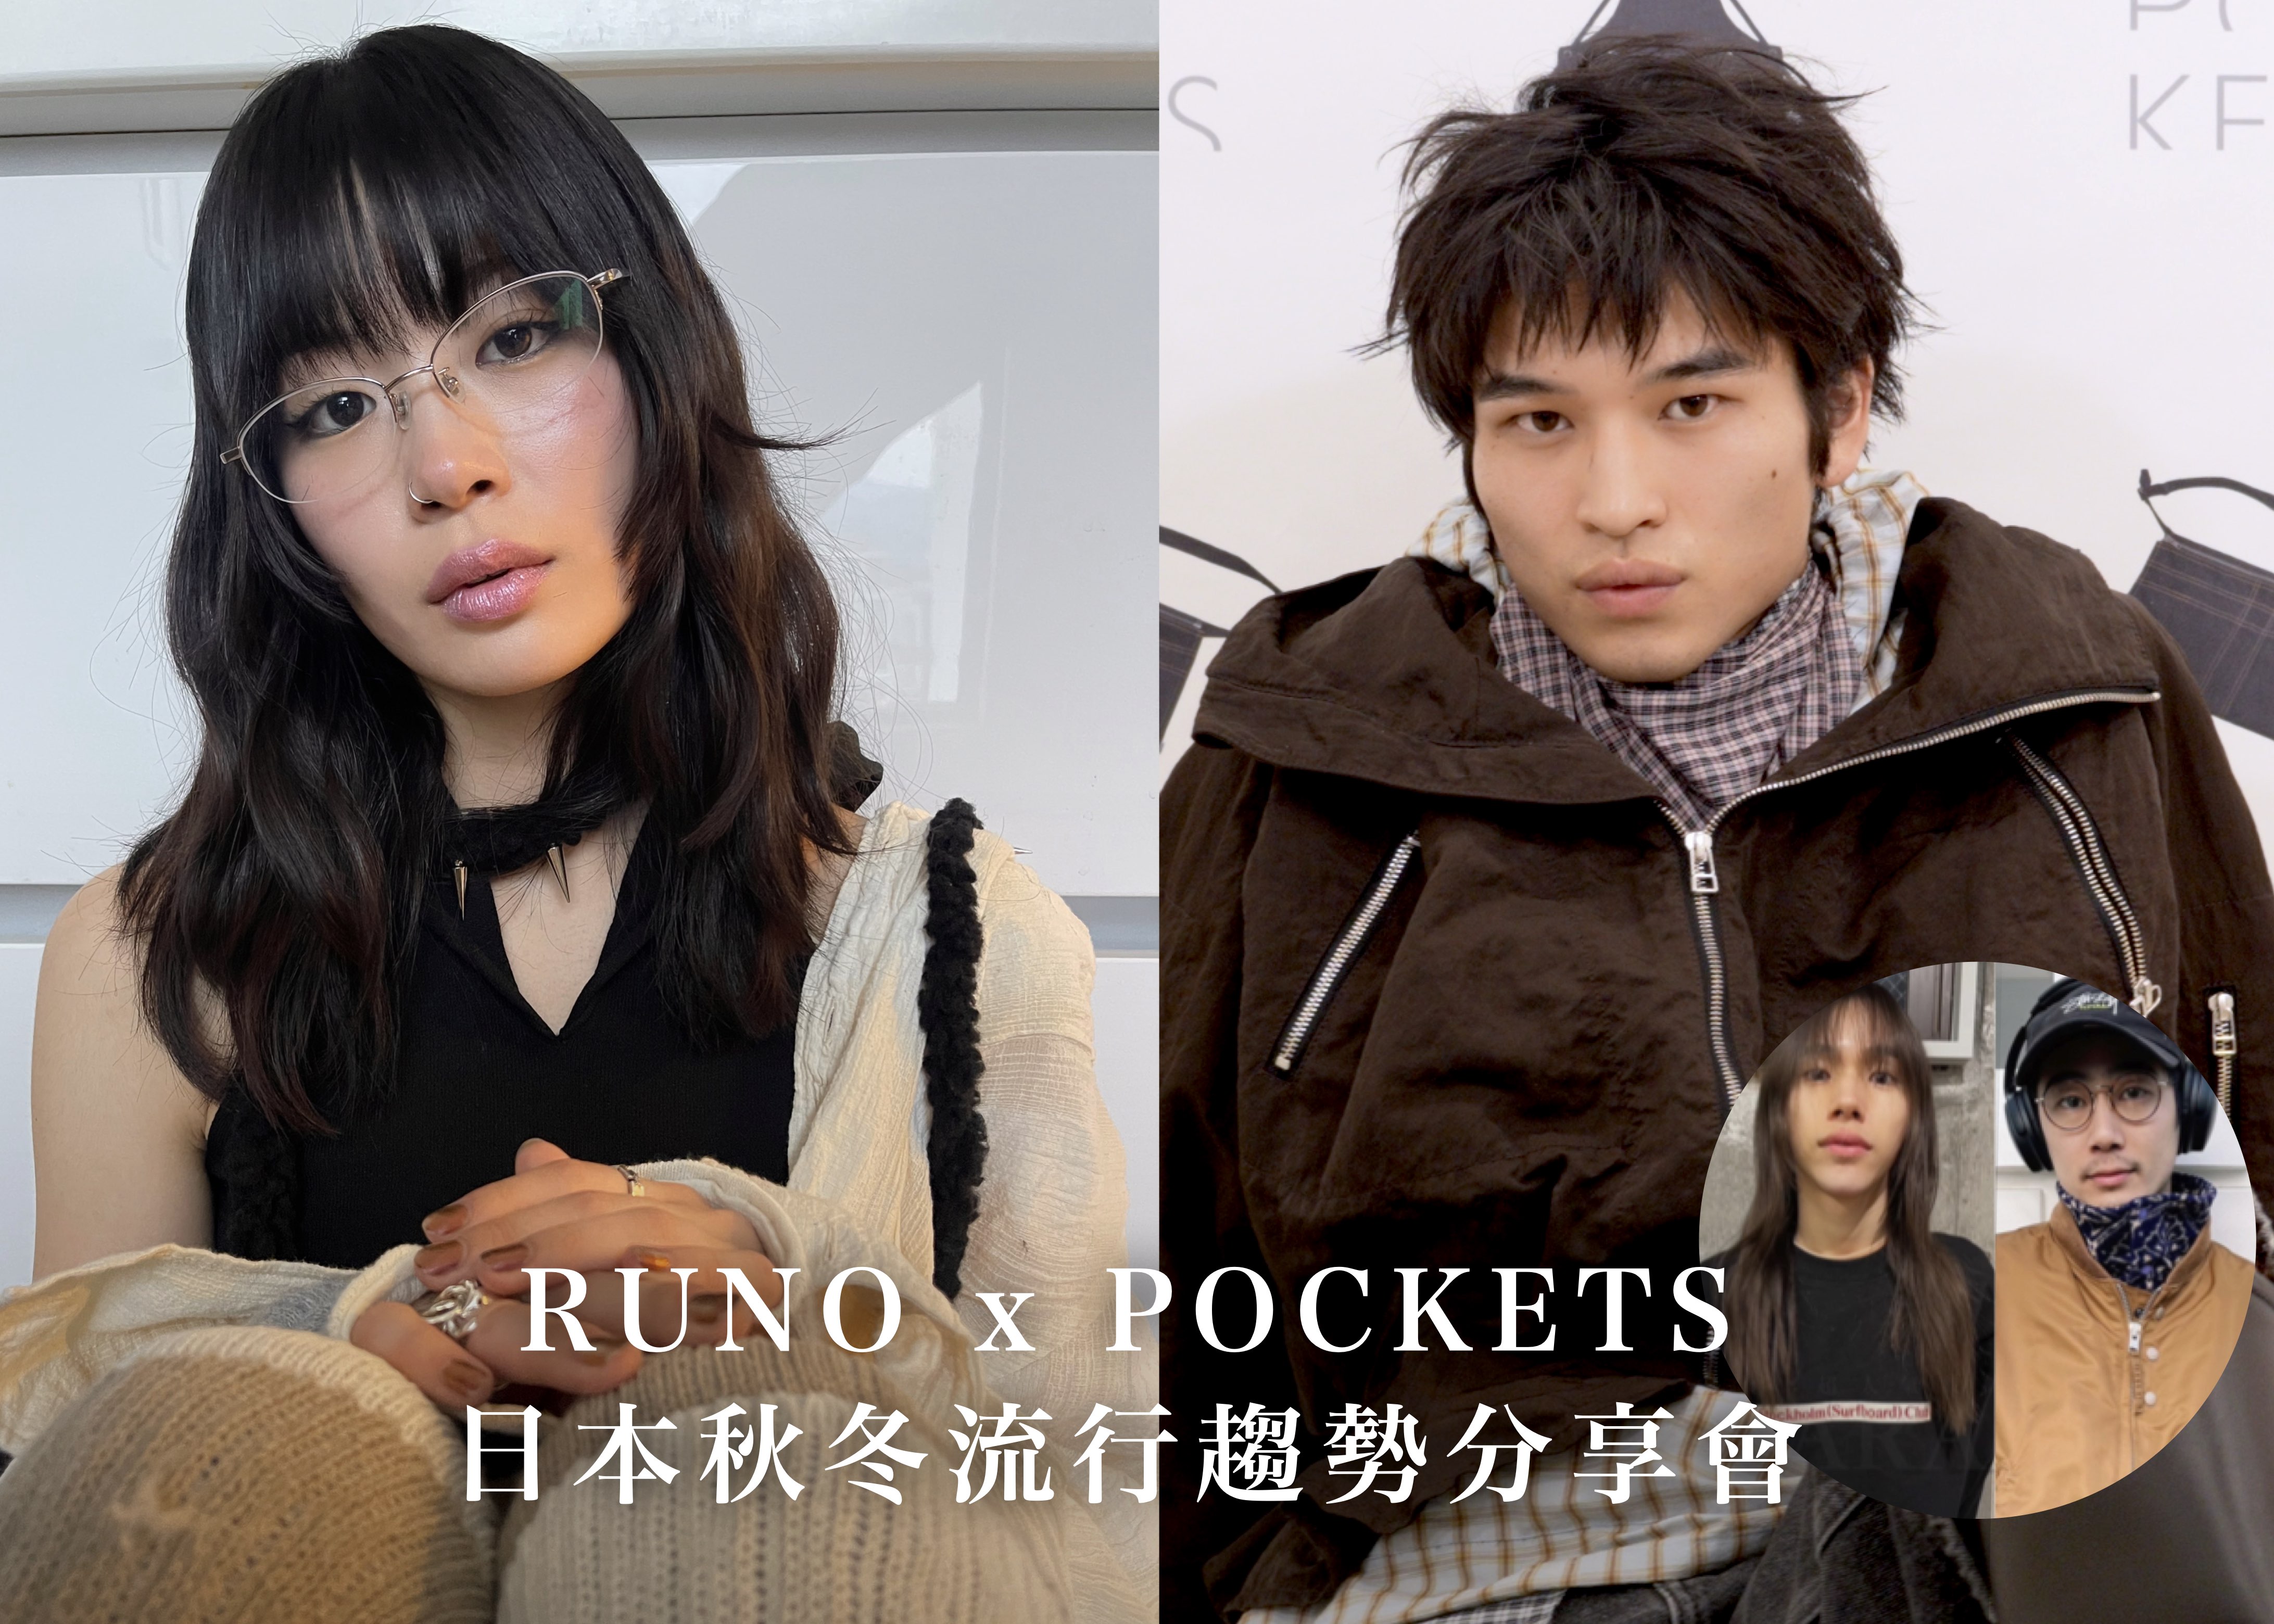 RUNO x POCKETS  日本秋冬流行趨勢分享會